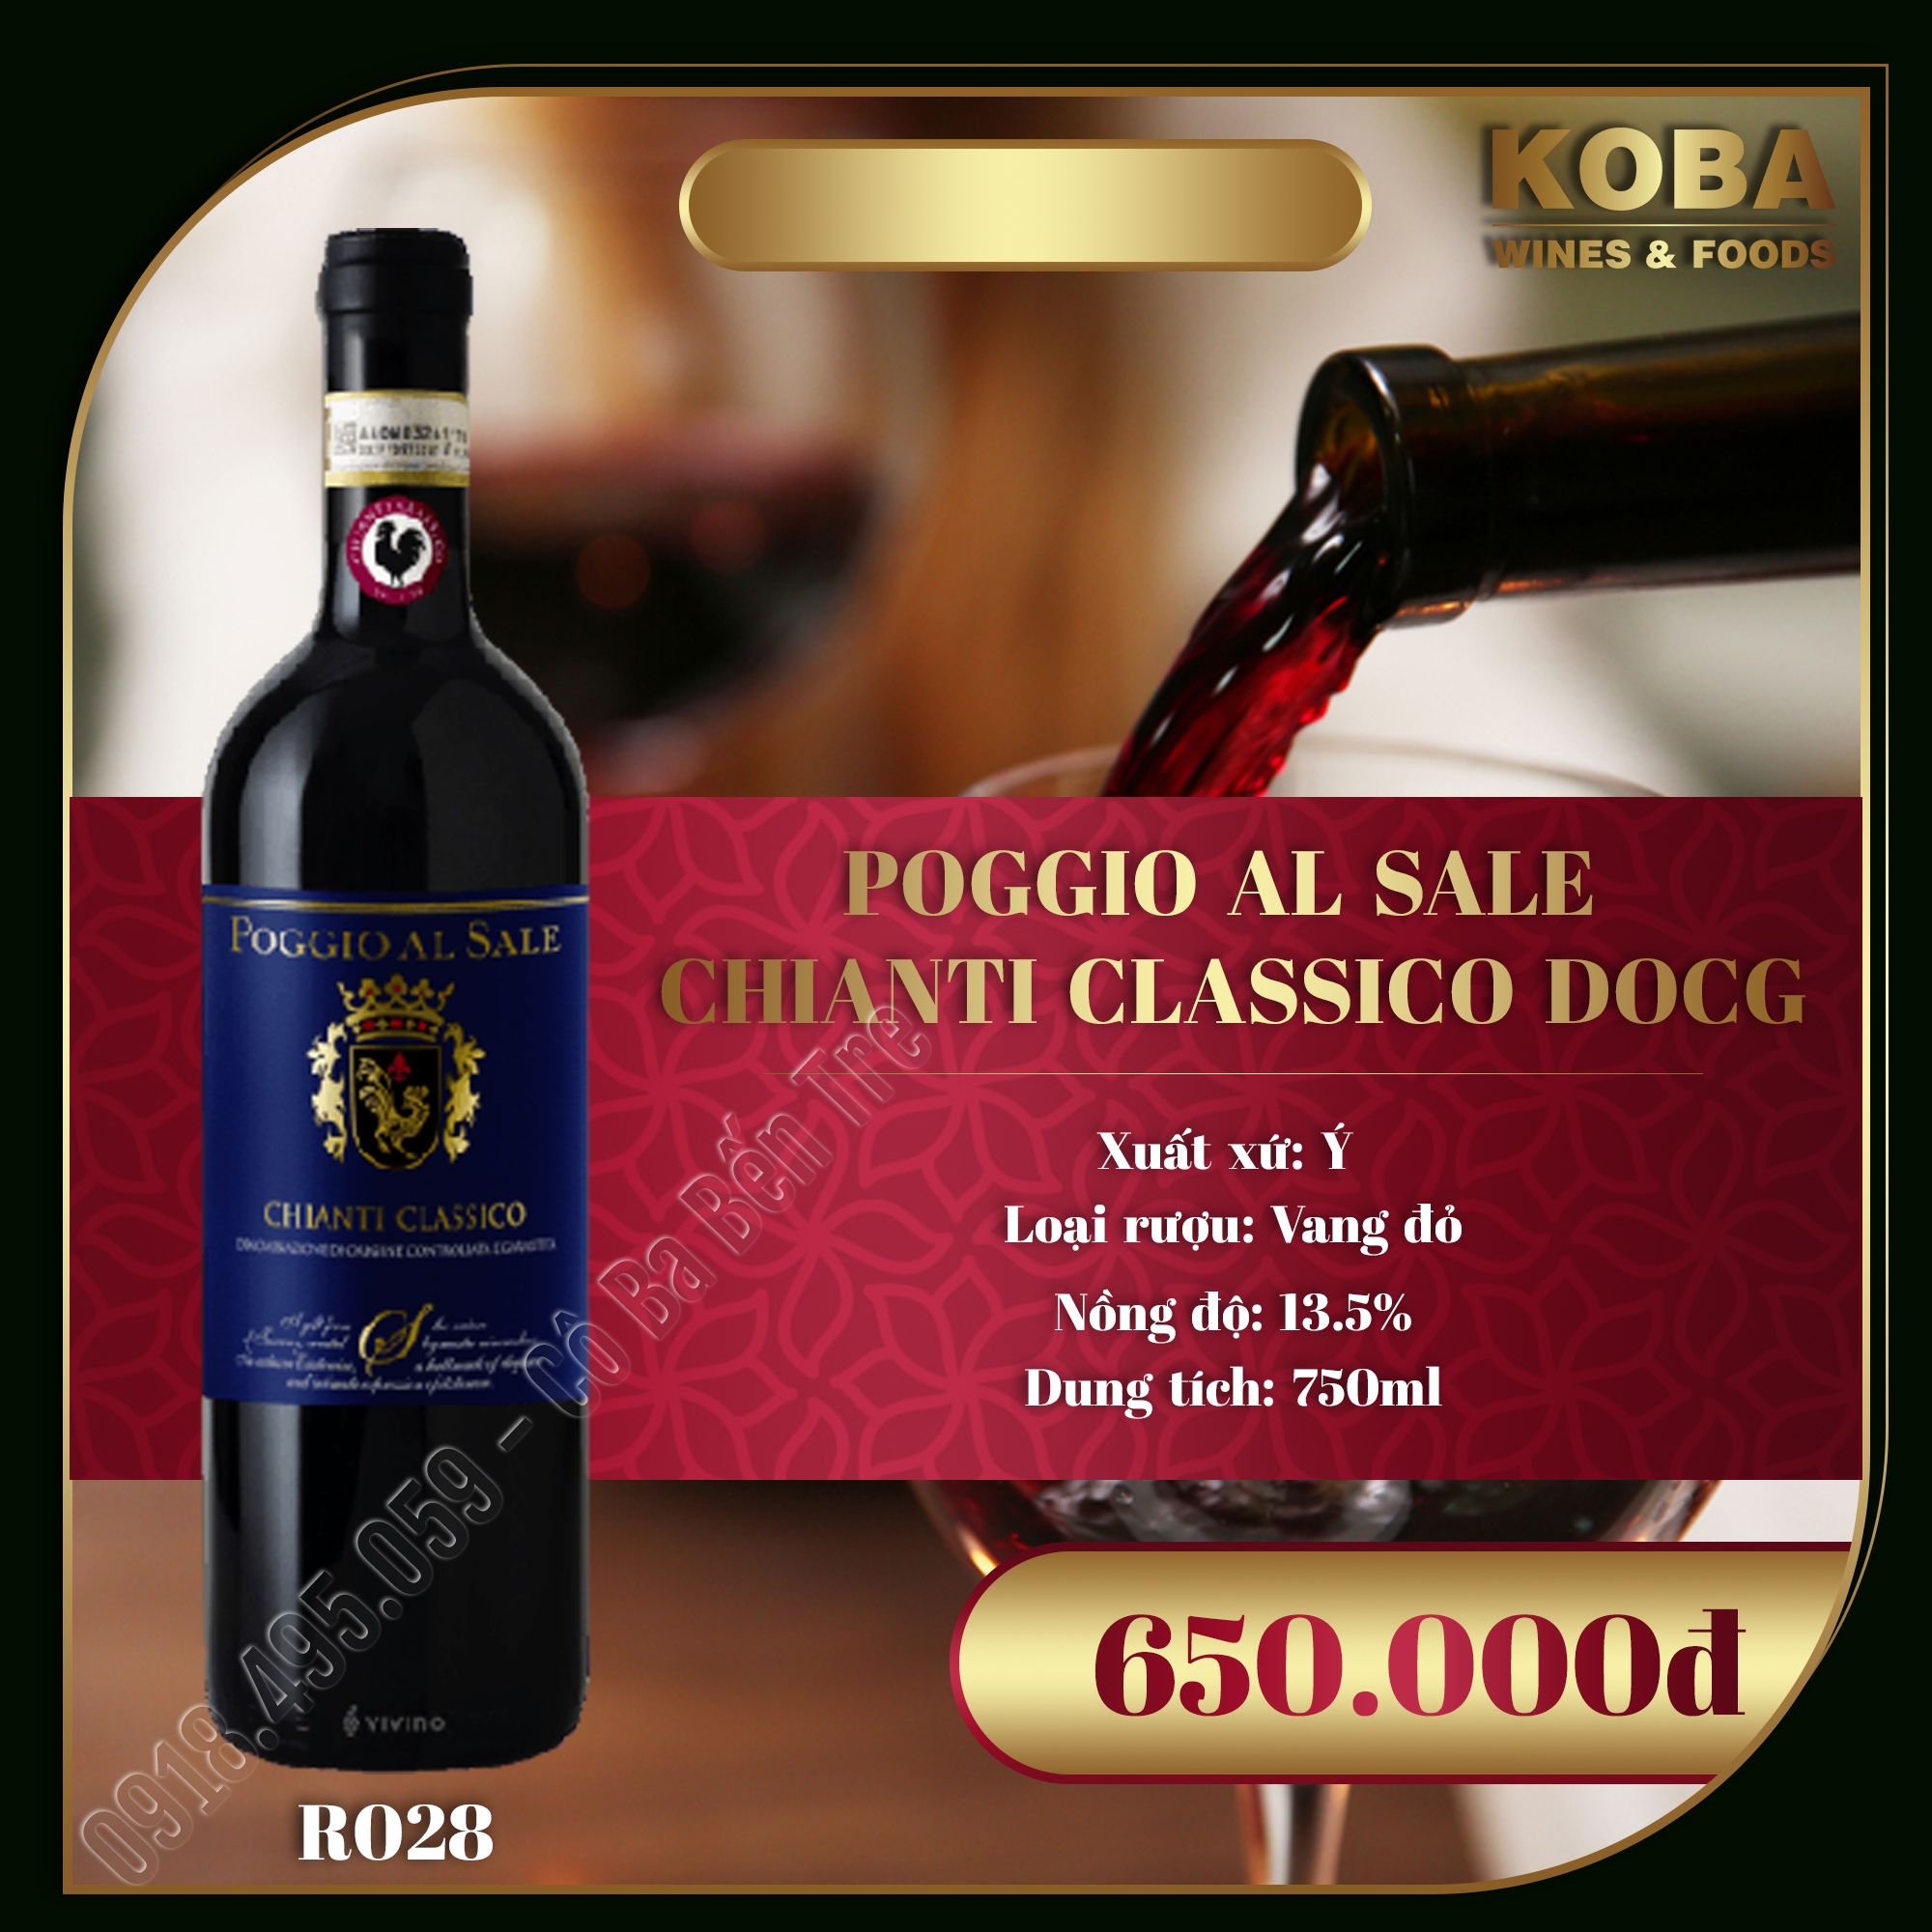 Rượu Vang Đỏ Ý - POGGIO AL SALE CHIANTI CLASSICO DOCG - 13.5 độ